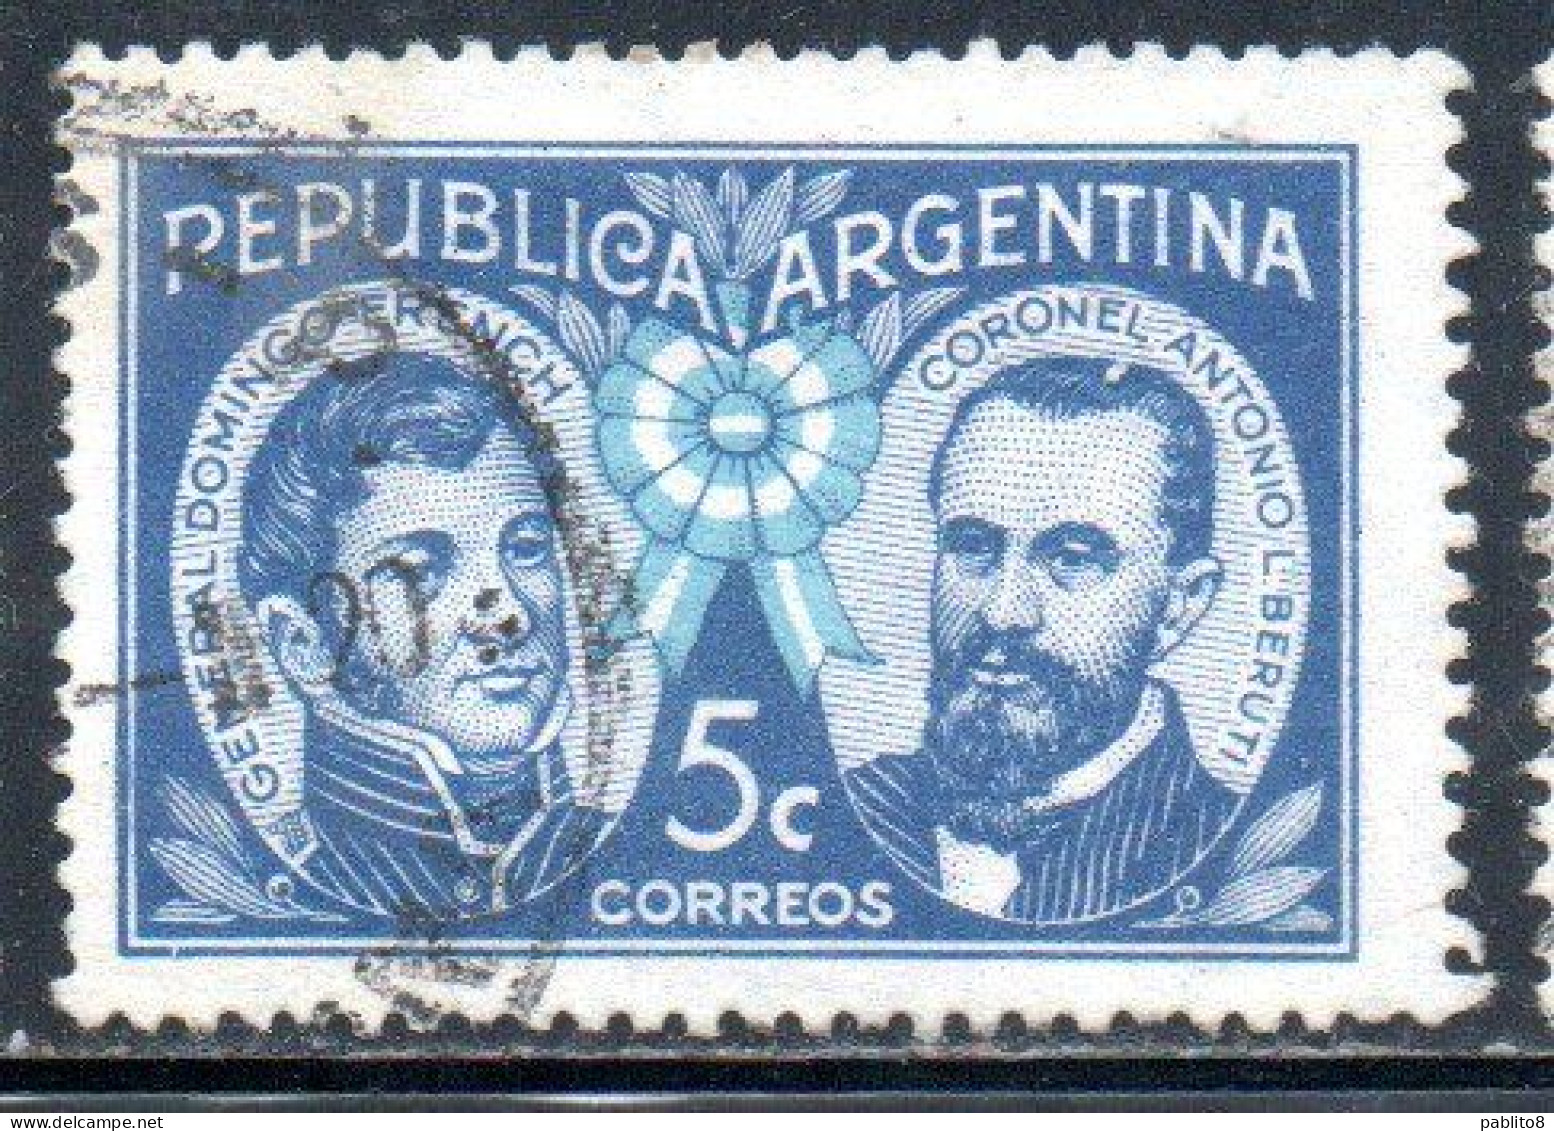 ARGENTINA 1941 GENERAL DOMINGO FRENCH AND COLONEL ANTONIO BERUTI 5c  USED USADO OBLITERE' - Usati